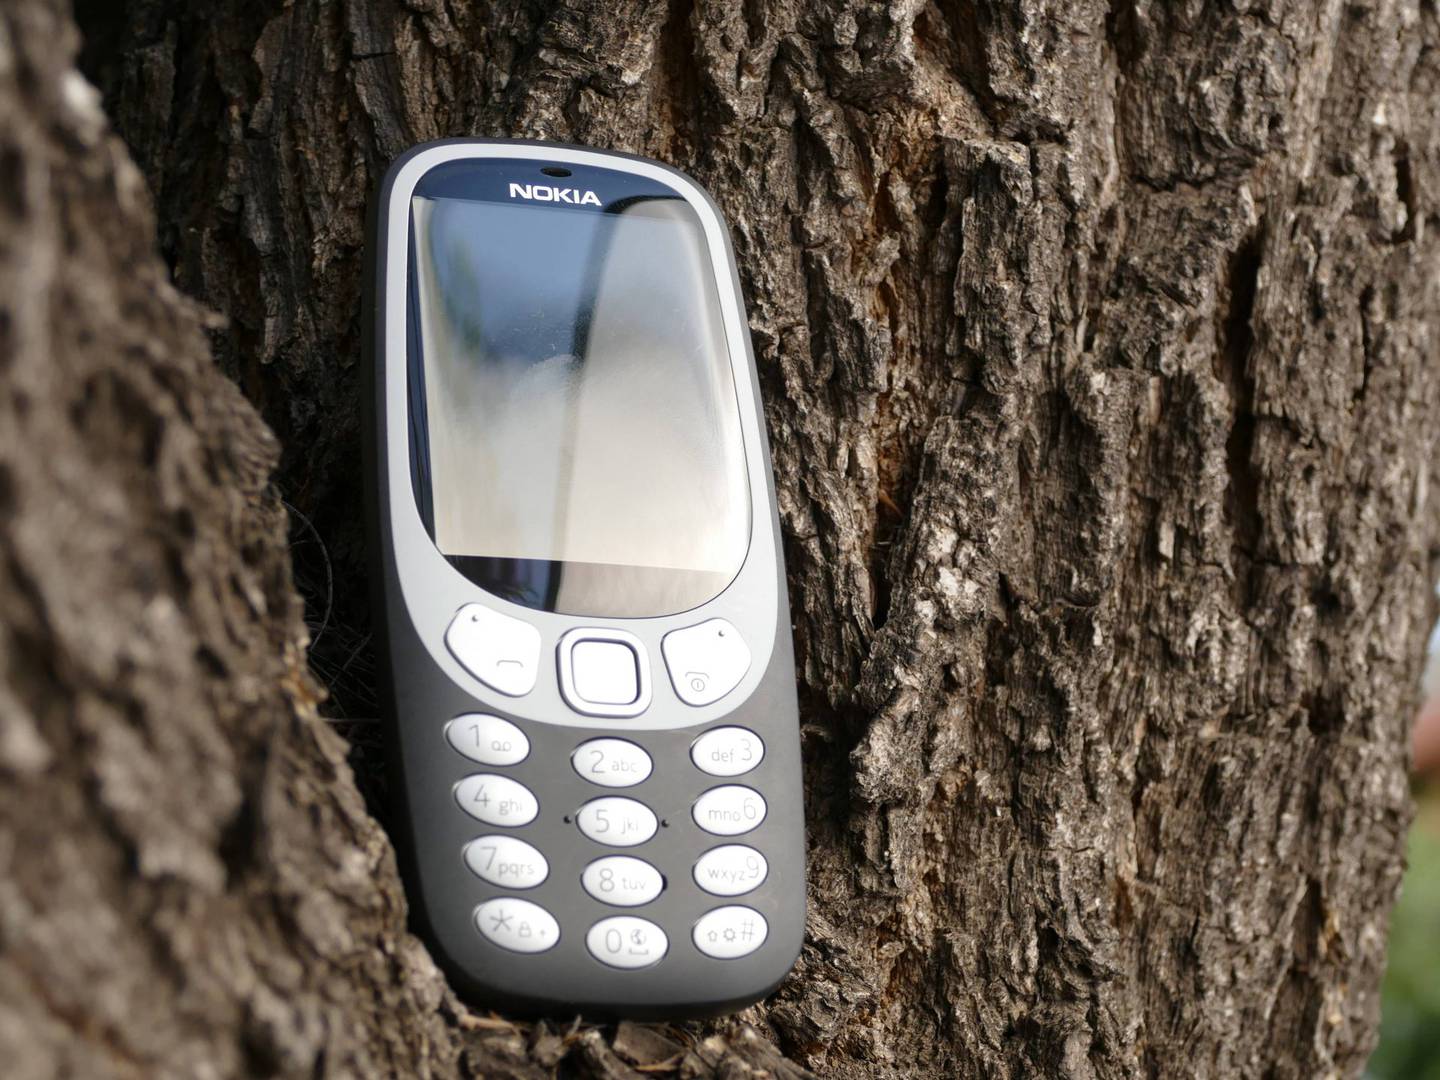 El Nokia 3310 volverá a las tiendas este año